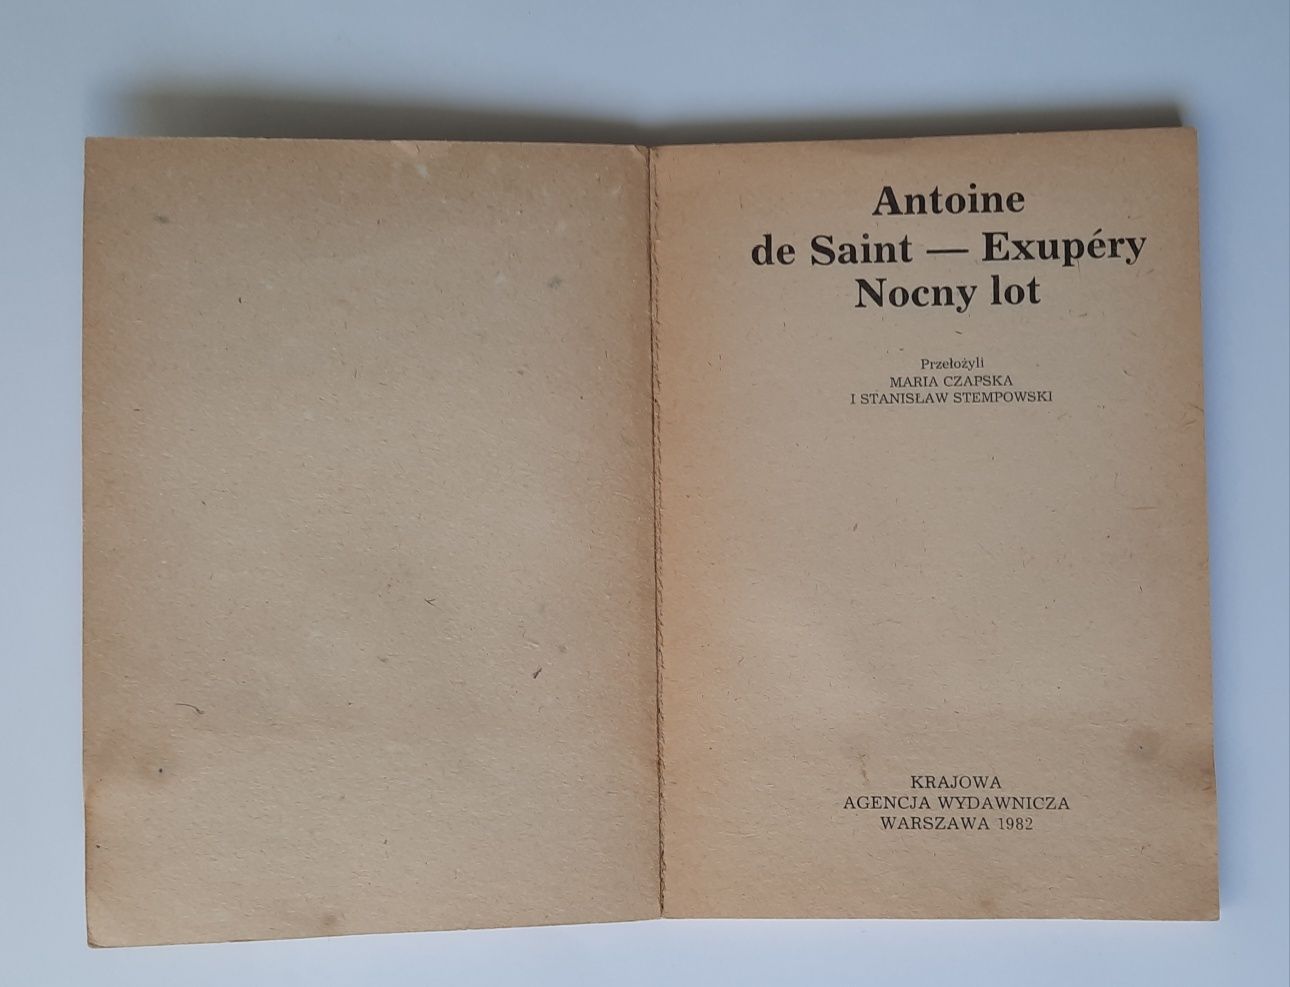 Nocny lot Antoine de Saint-Exupery